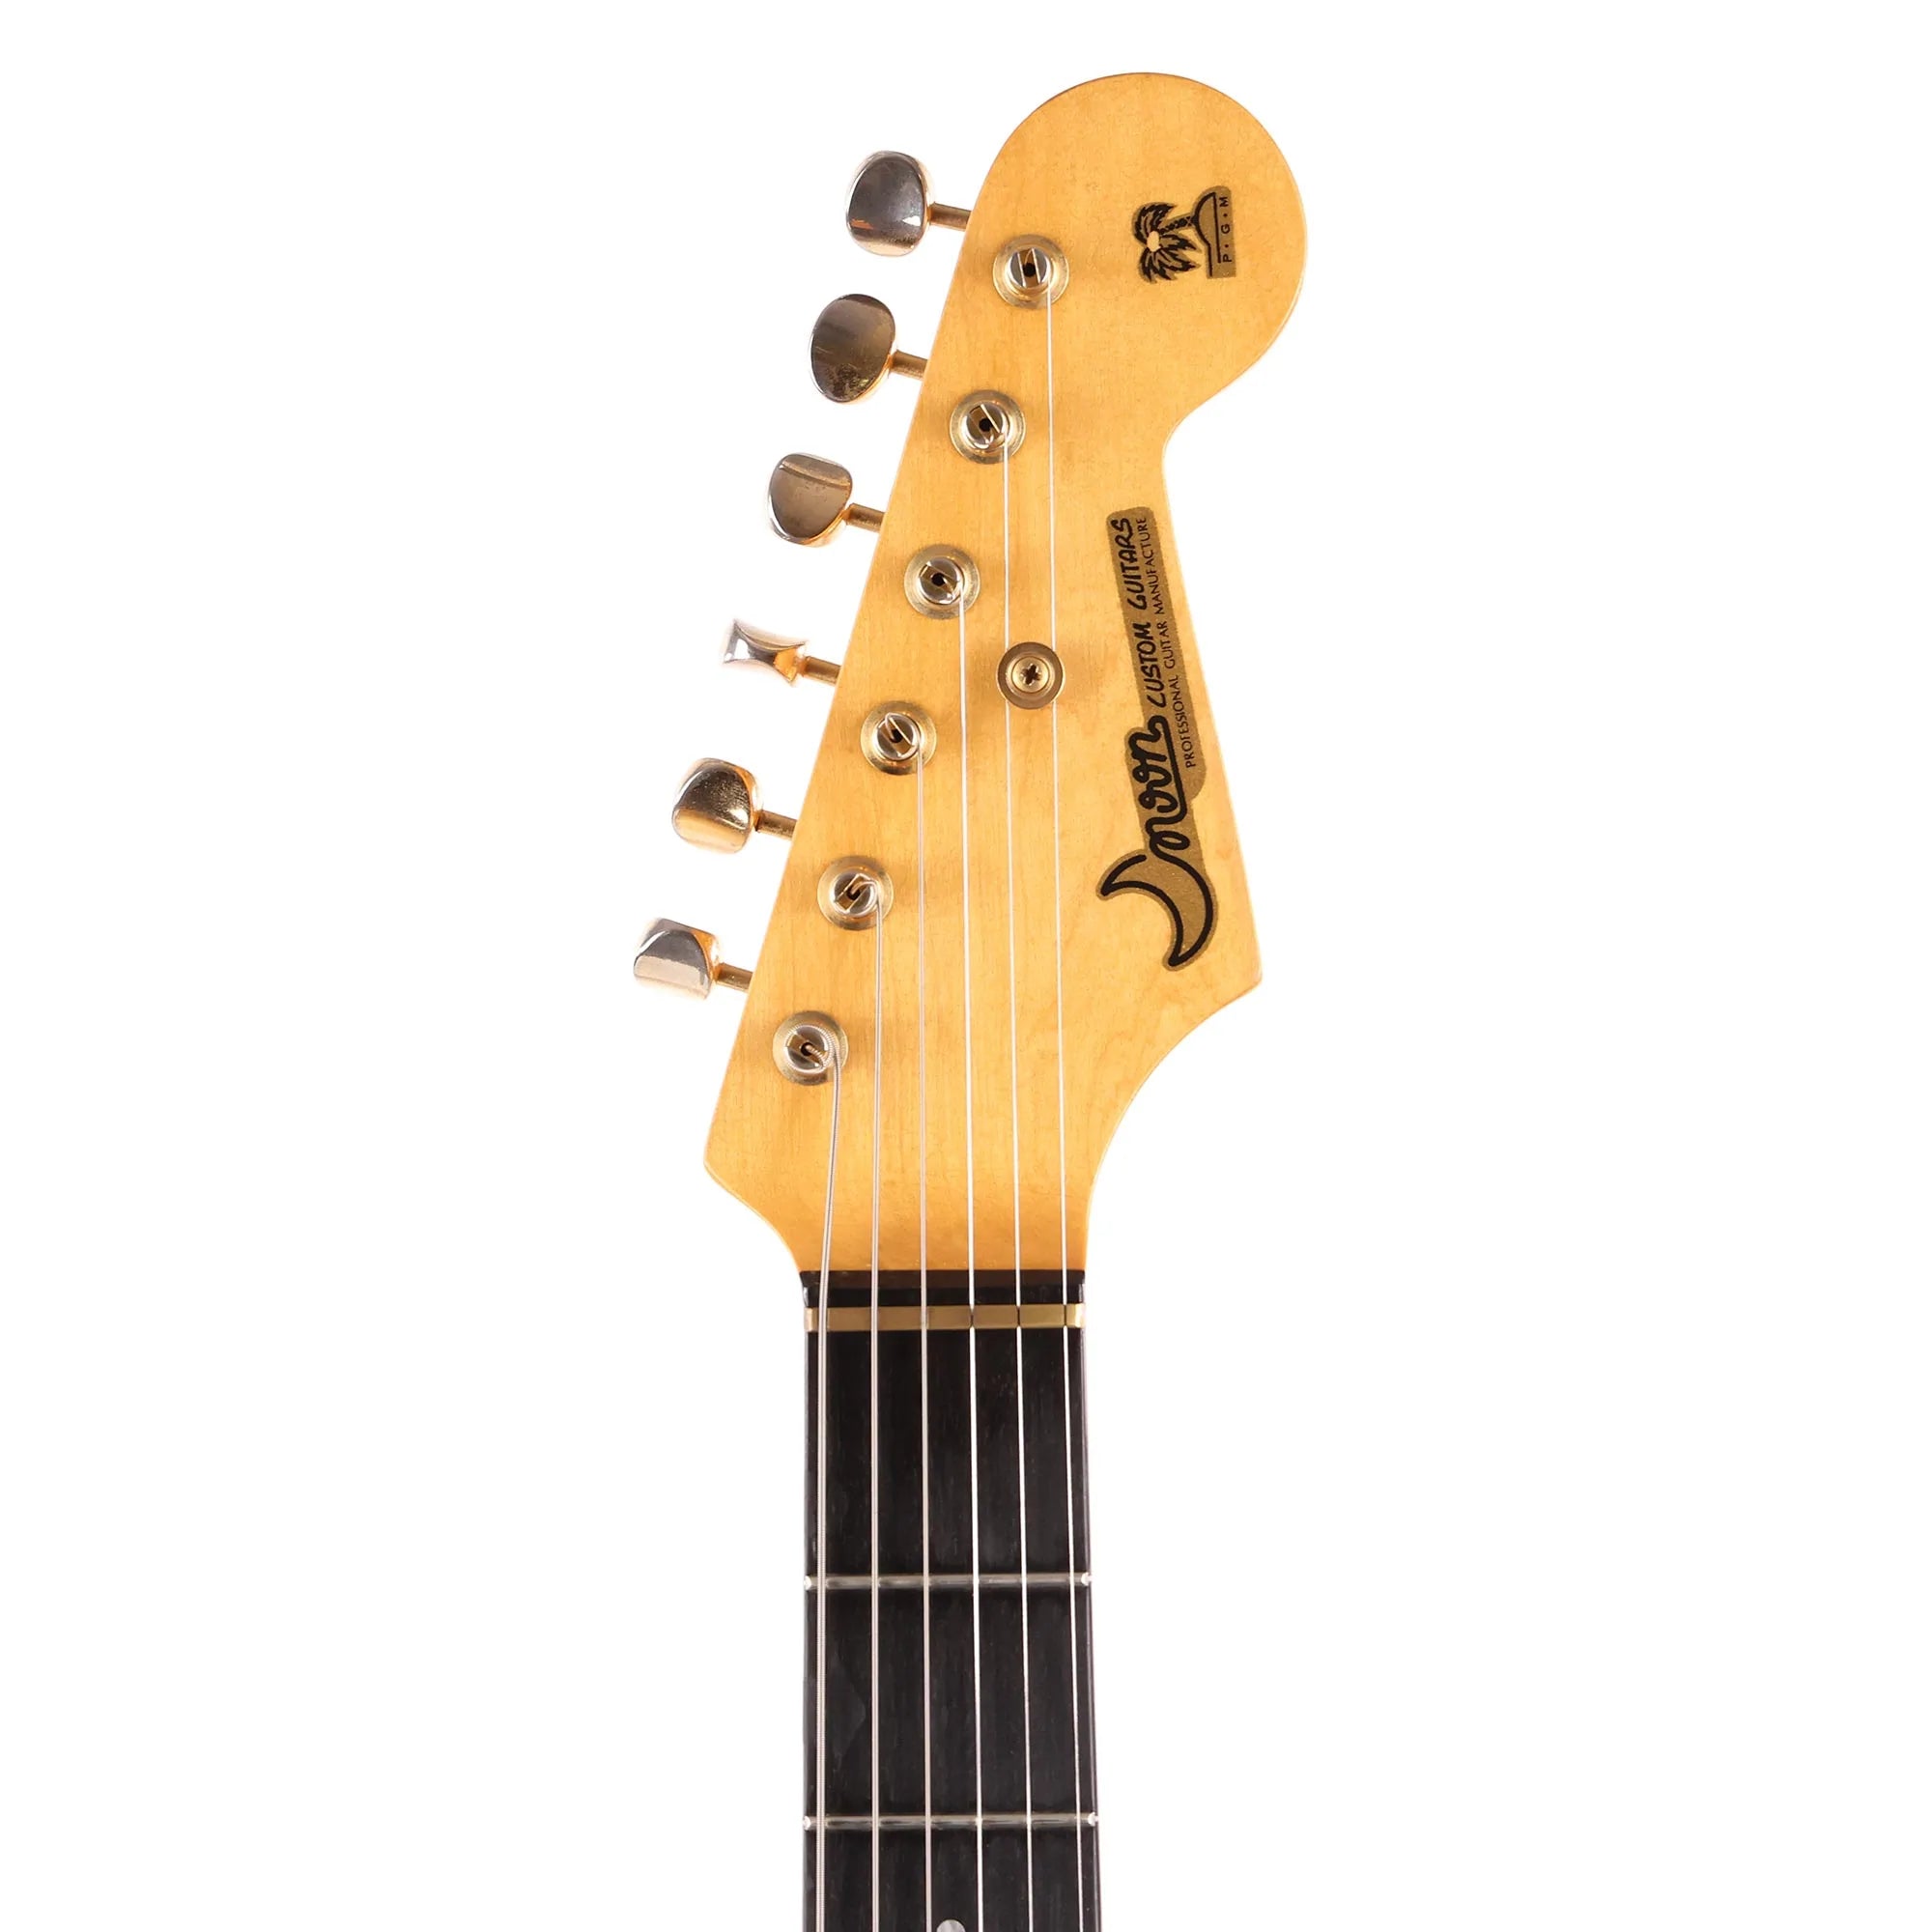 PGM オーダーメイドギター - エレキギター